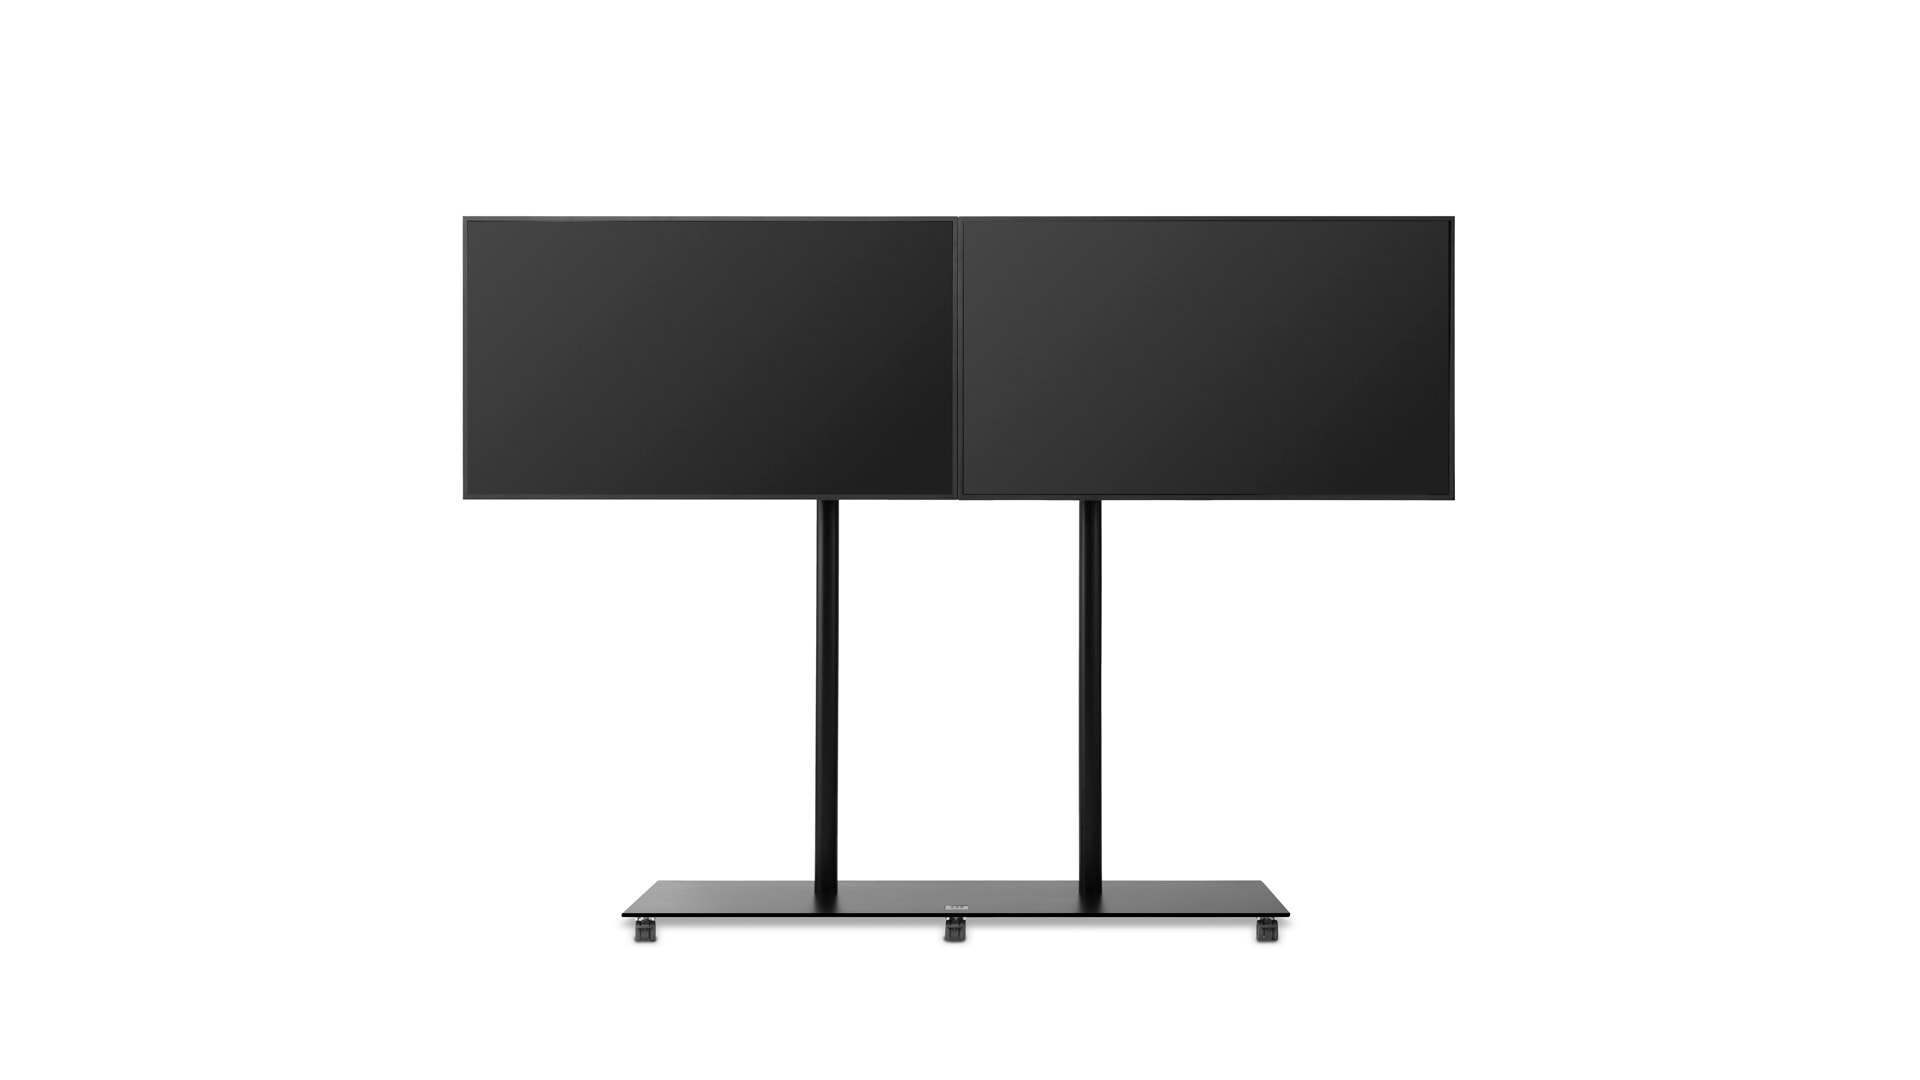 medienTROLLEY large – TV-Ständer für 65 bis 100 Zoll Größe oder 2 Monitore bis 65 Zoll Größe